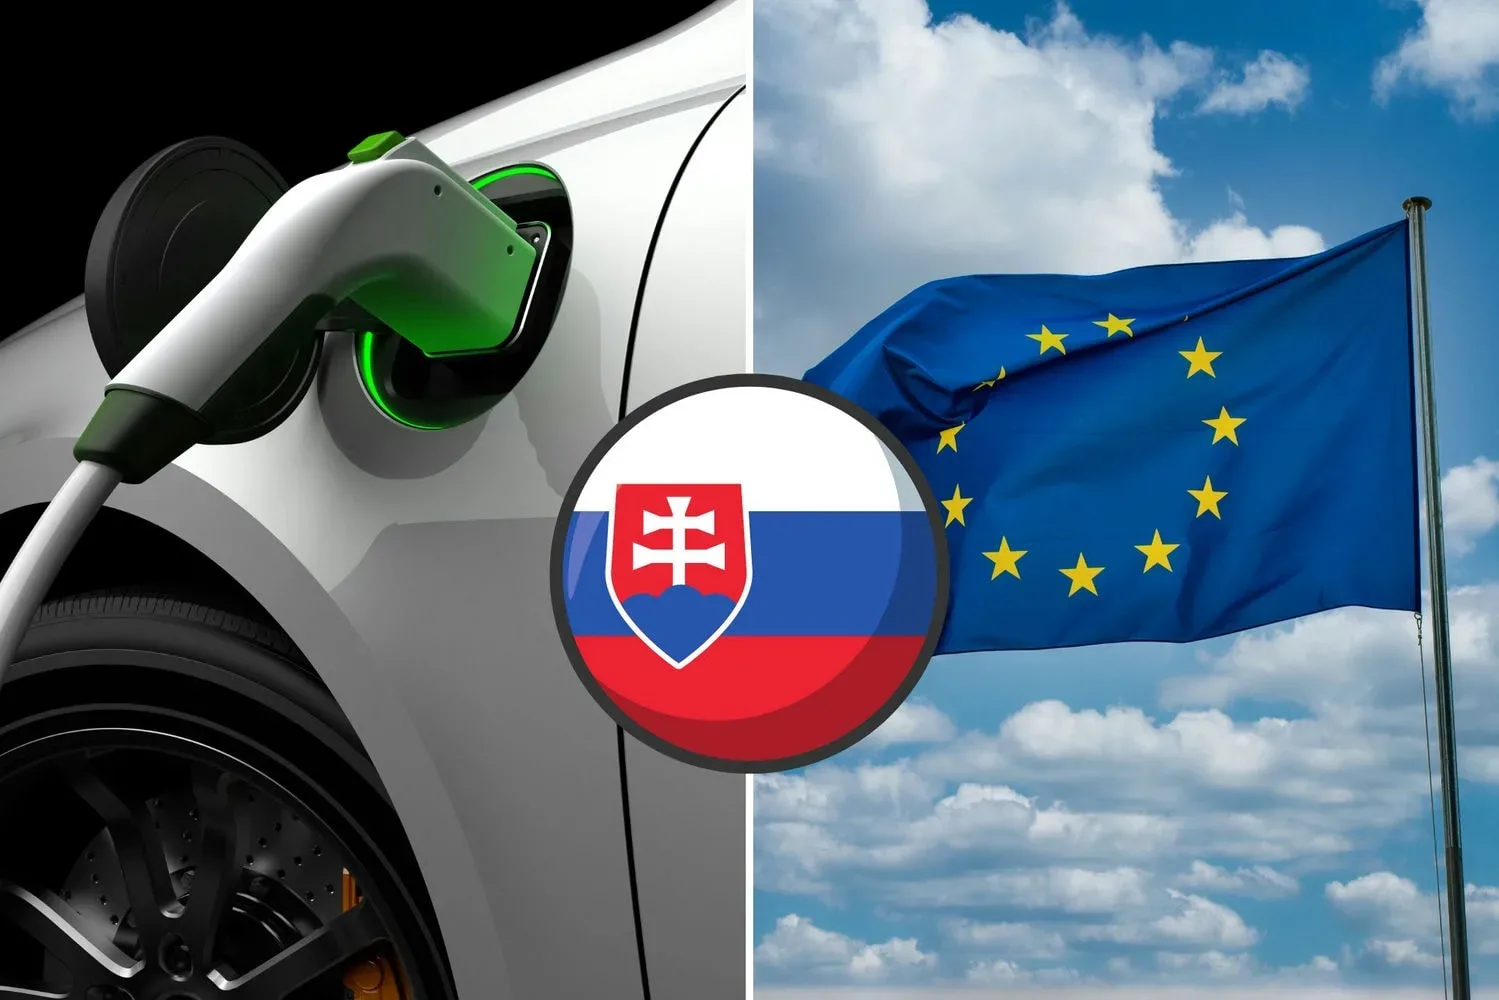 elektromobil slovensko eu jpg webp